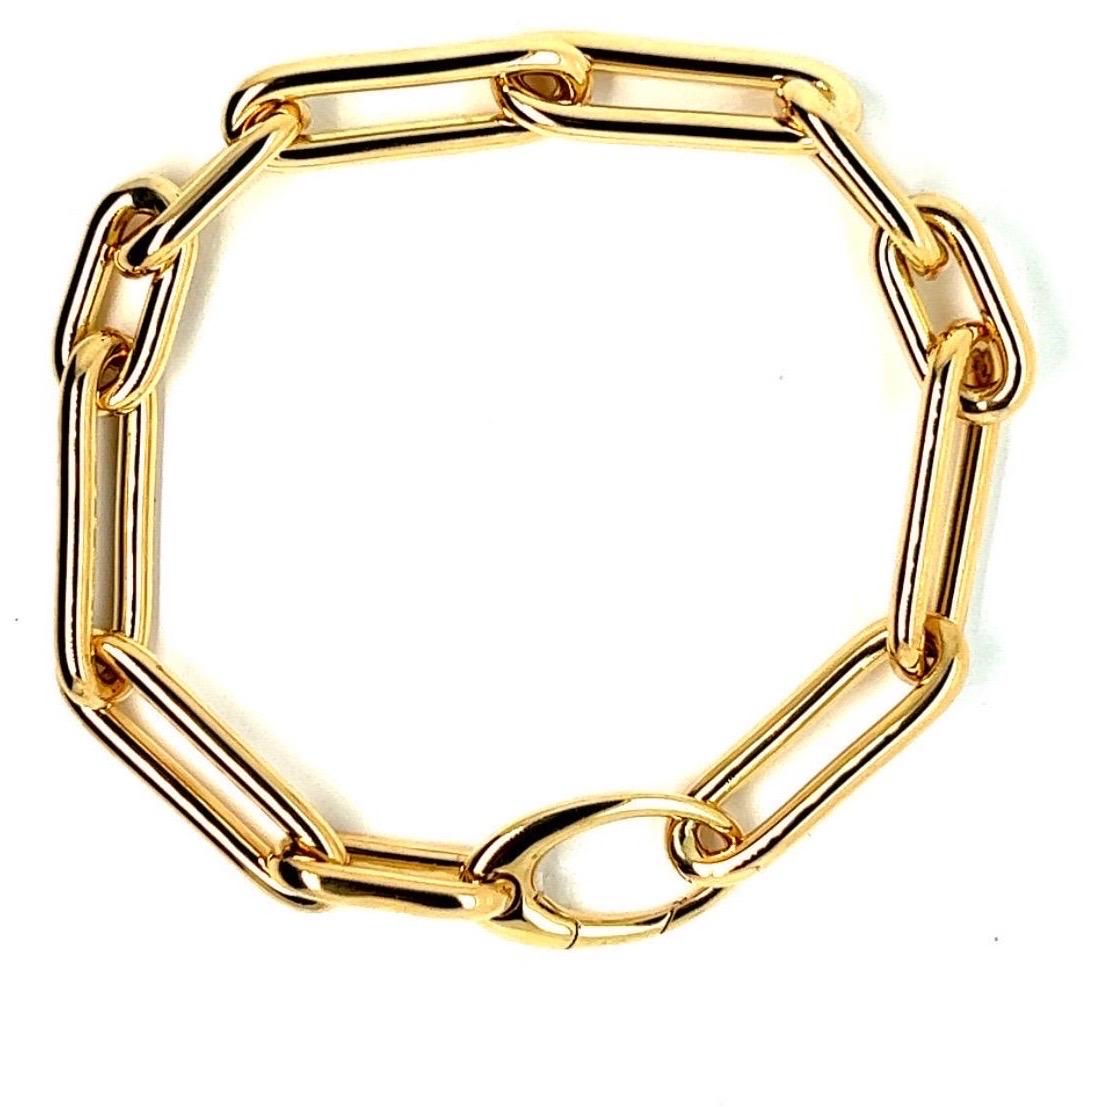 Découvrez ce magnifique bracelet à maillons fins en or jaune 18 carats, un bijou à l'élégance intemporelle qui apportera une touche de sophistication à votre style. Réalisé avec soin et savoir-faire, ce bracelet est conçu pour être porté au